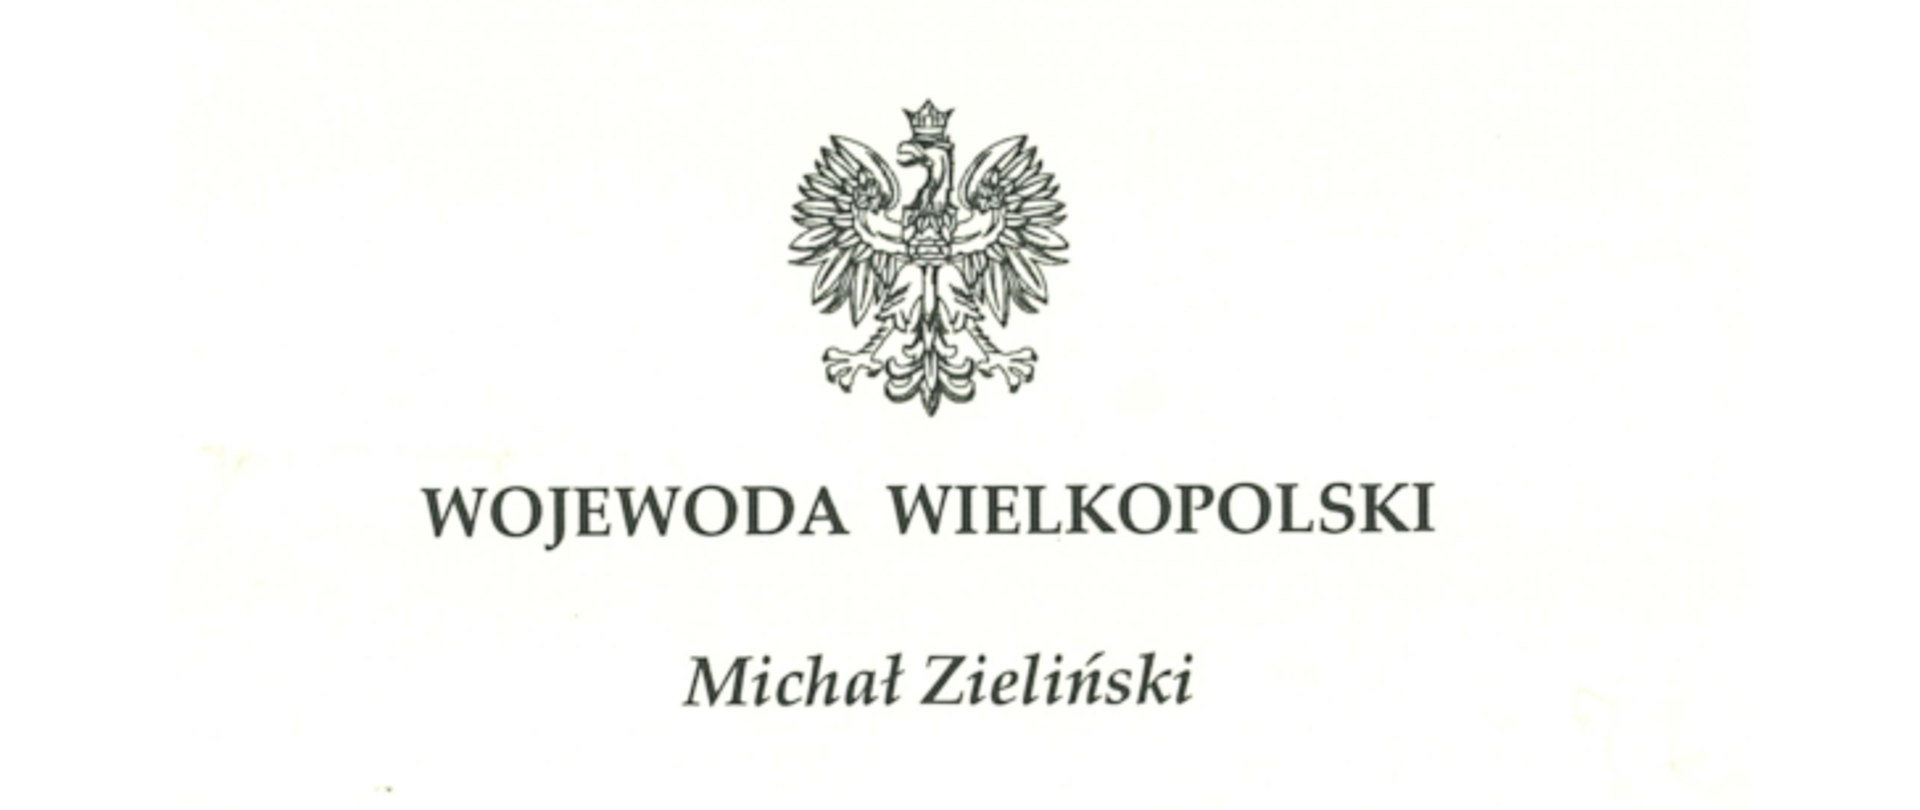 Wojewoda wielkopolski Michał Zieliński